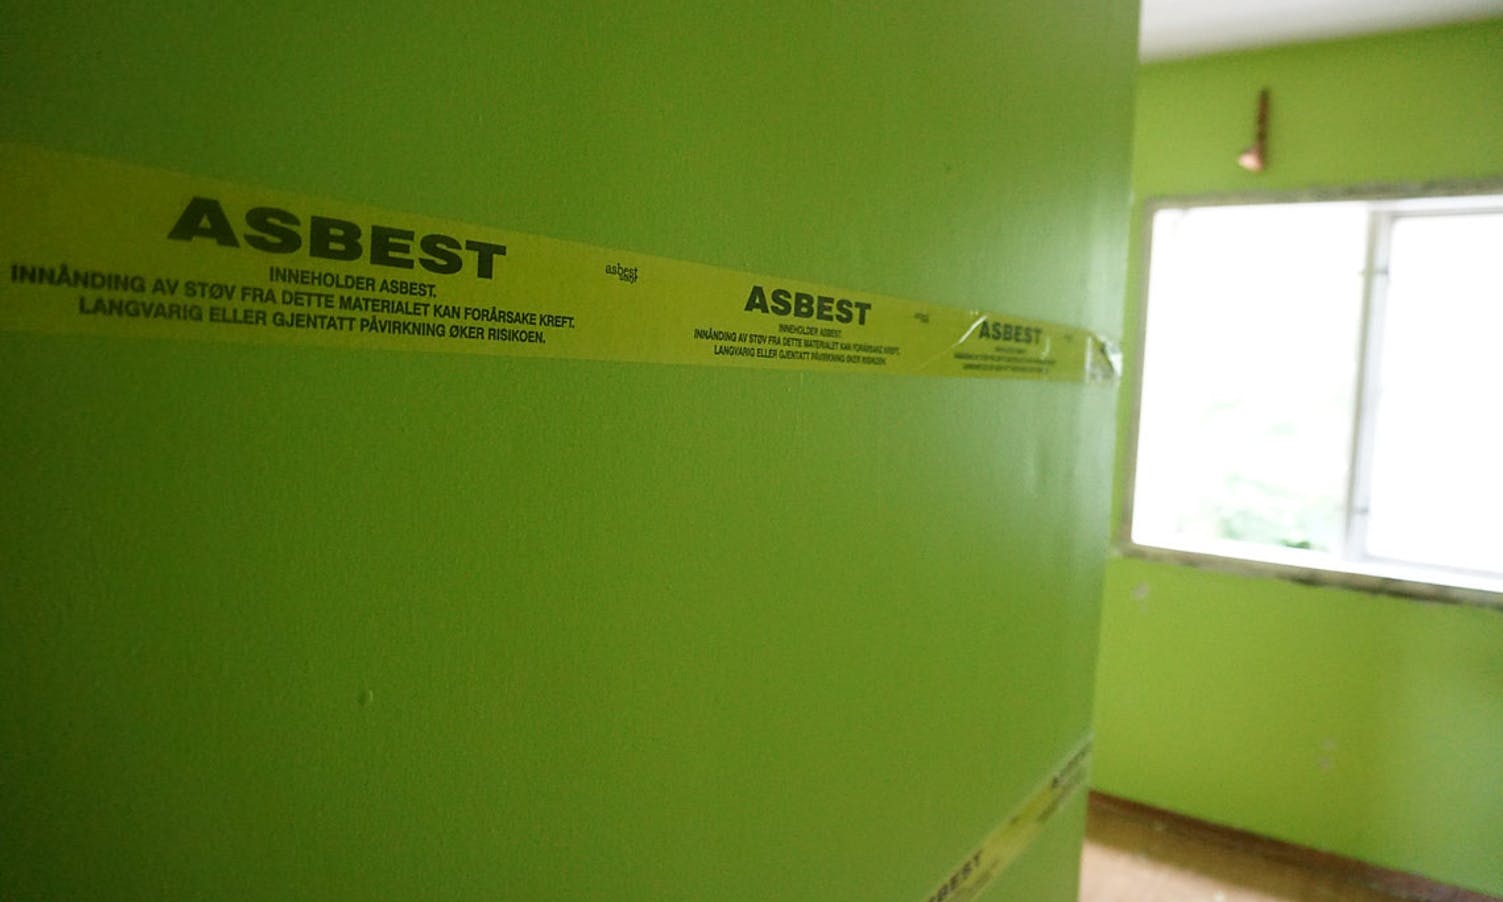 Det er funne asbest i bygget.  (Foto: KOG)